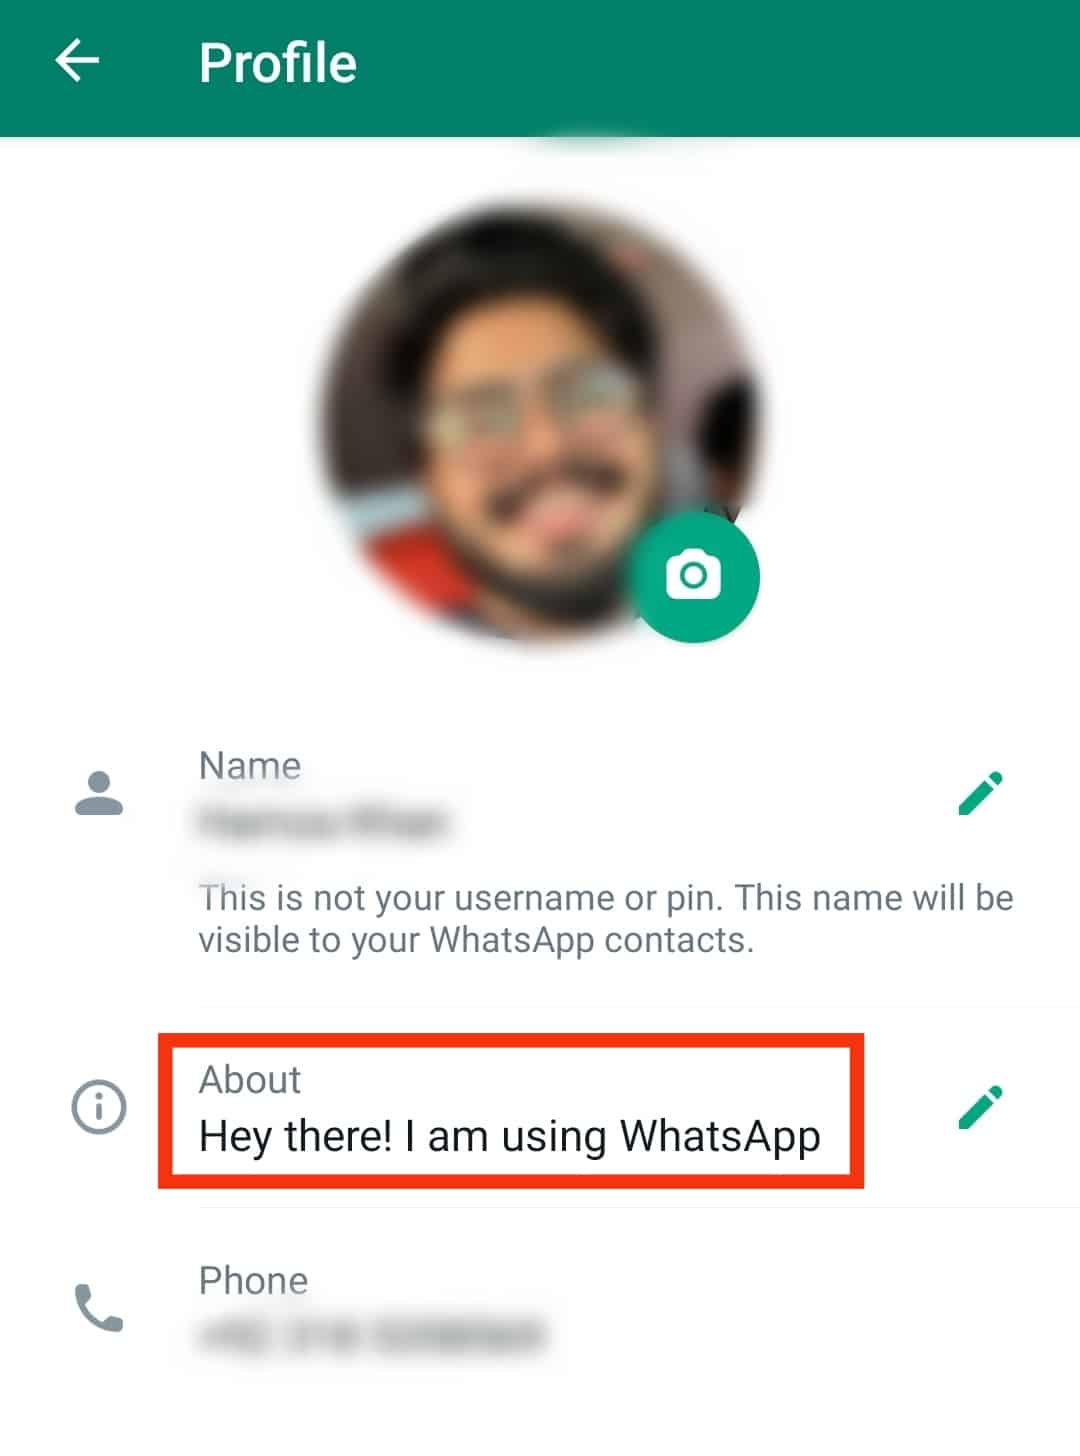 ¿Qué significa "¡Hola! Estoy usando WhatsApp." ¿Significar?